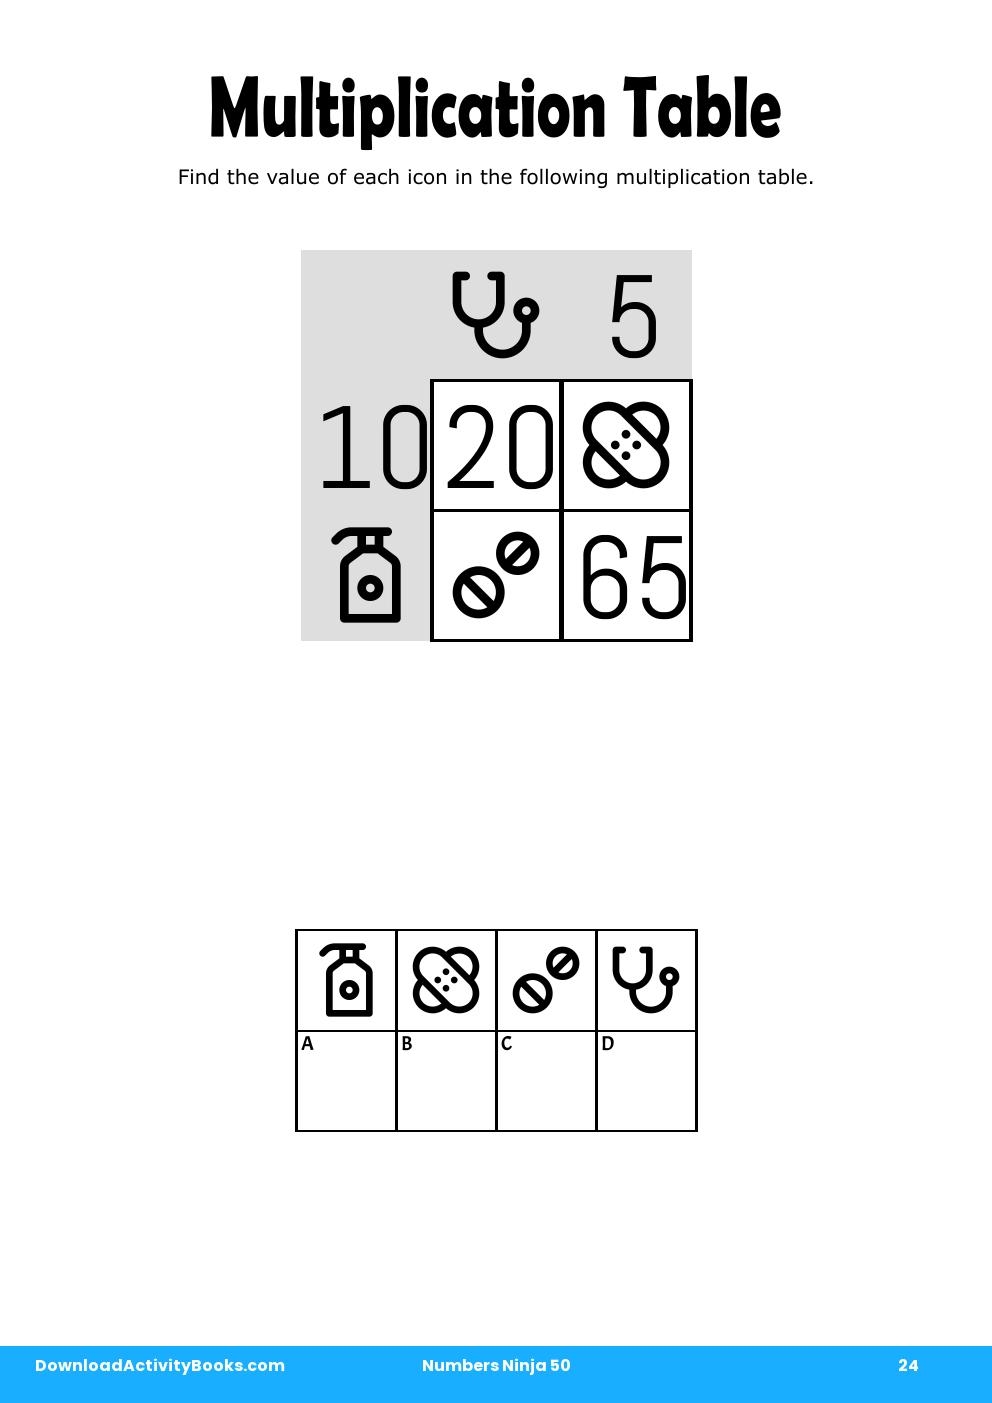 Multiplication Table in Numbers Ninja 50